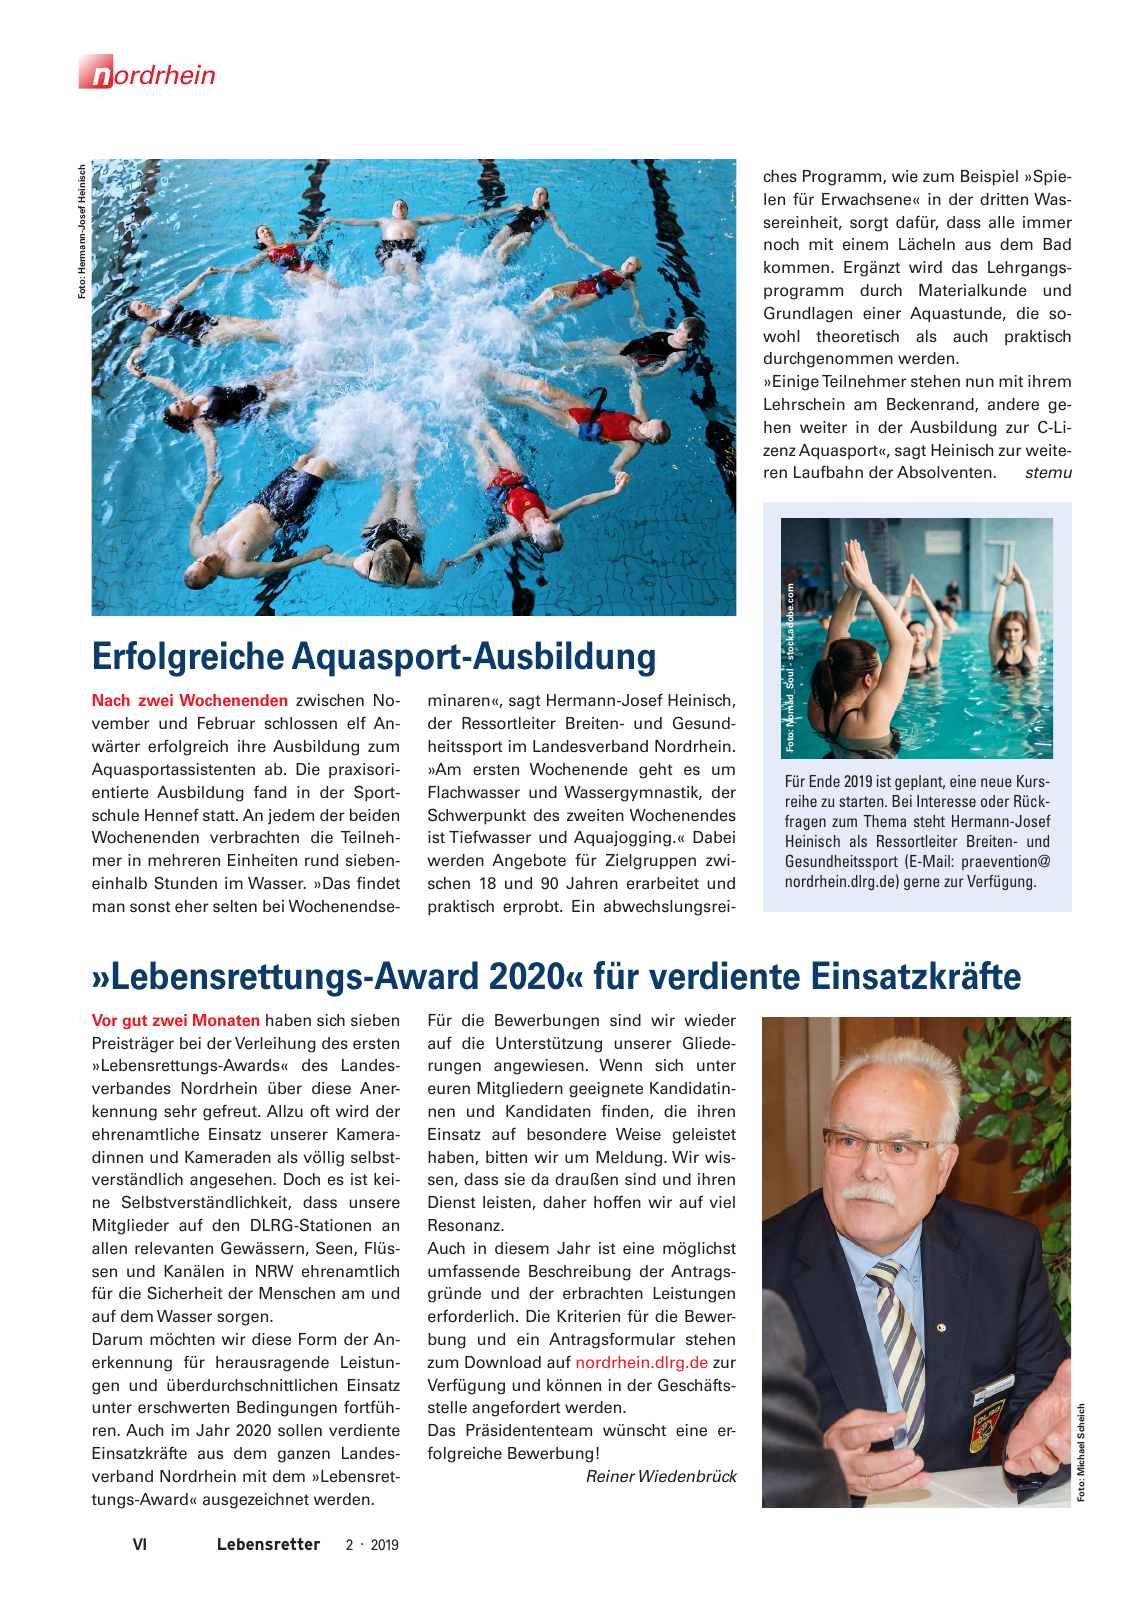 Vorschau Lebensretter 2/2019 - Nordrhein Regionalausgabe Seite 8